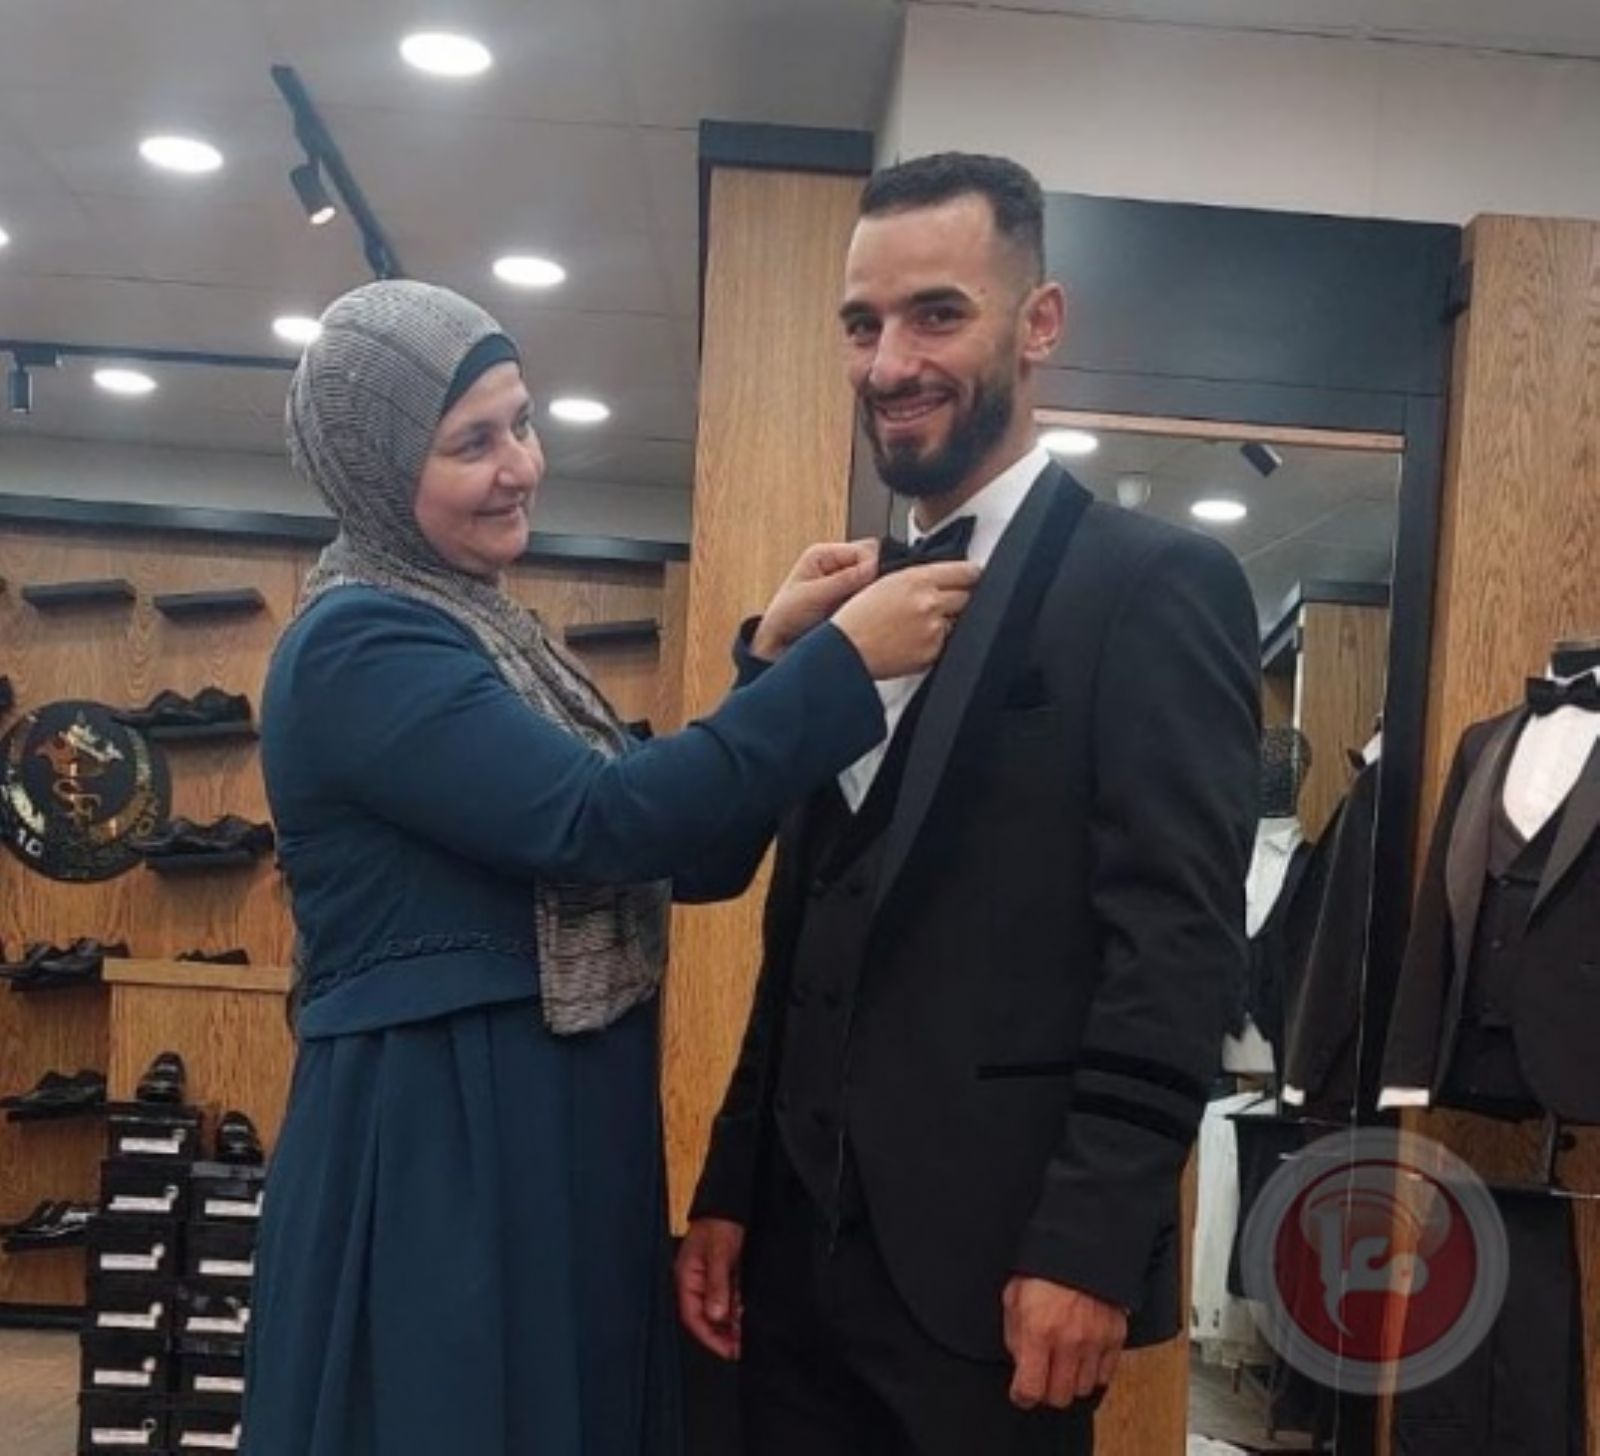 العريس المعتقل محمد البكري- في يوم زفافه يُحوّل للاعتقال الإداري